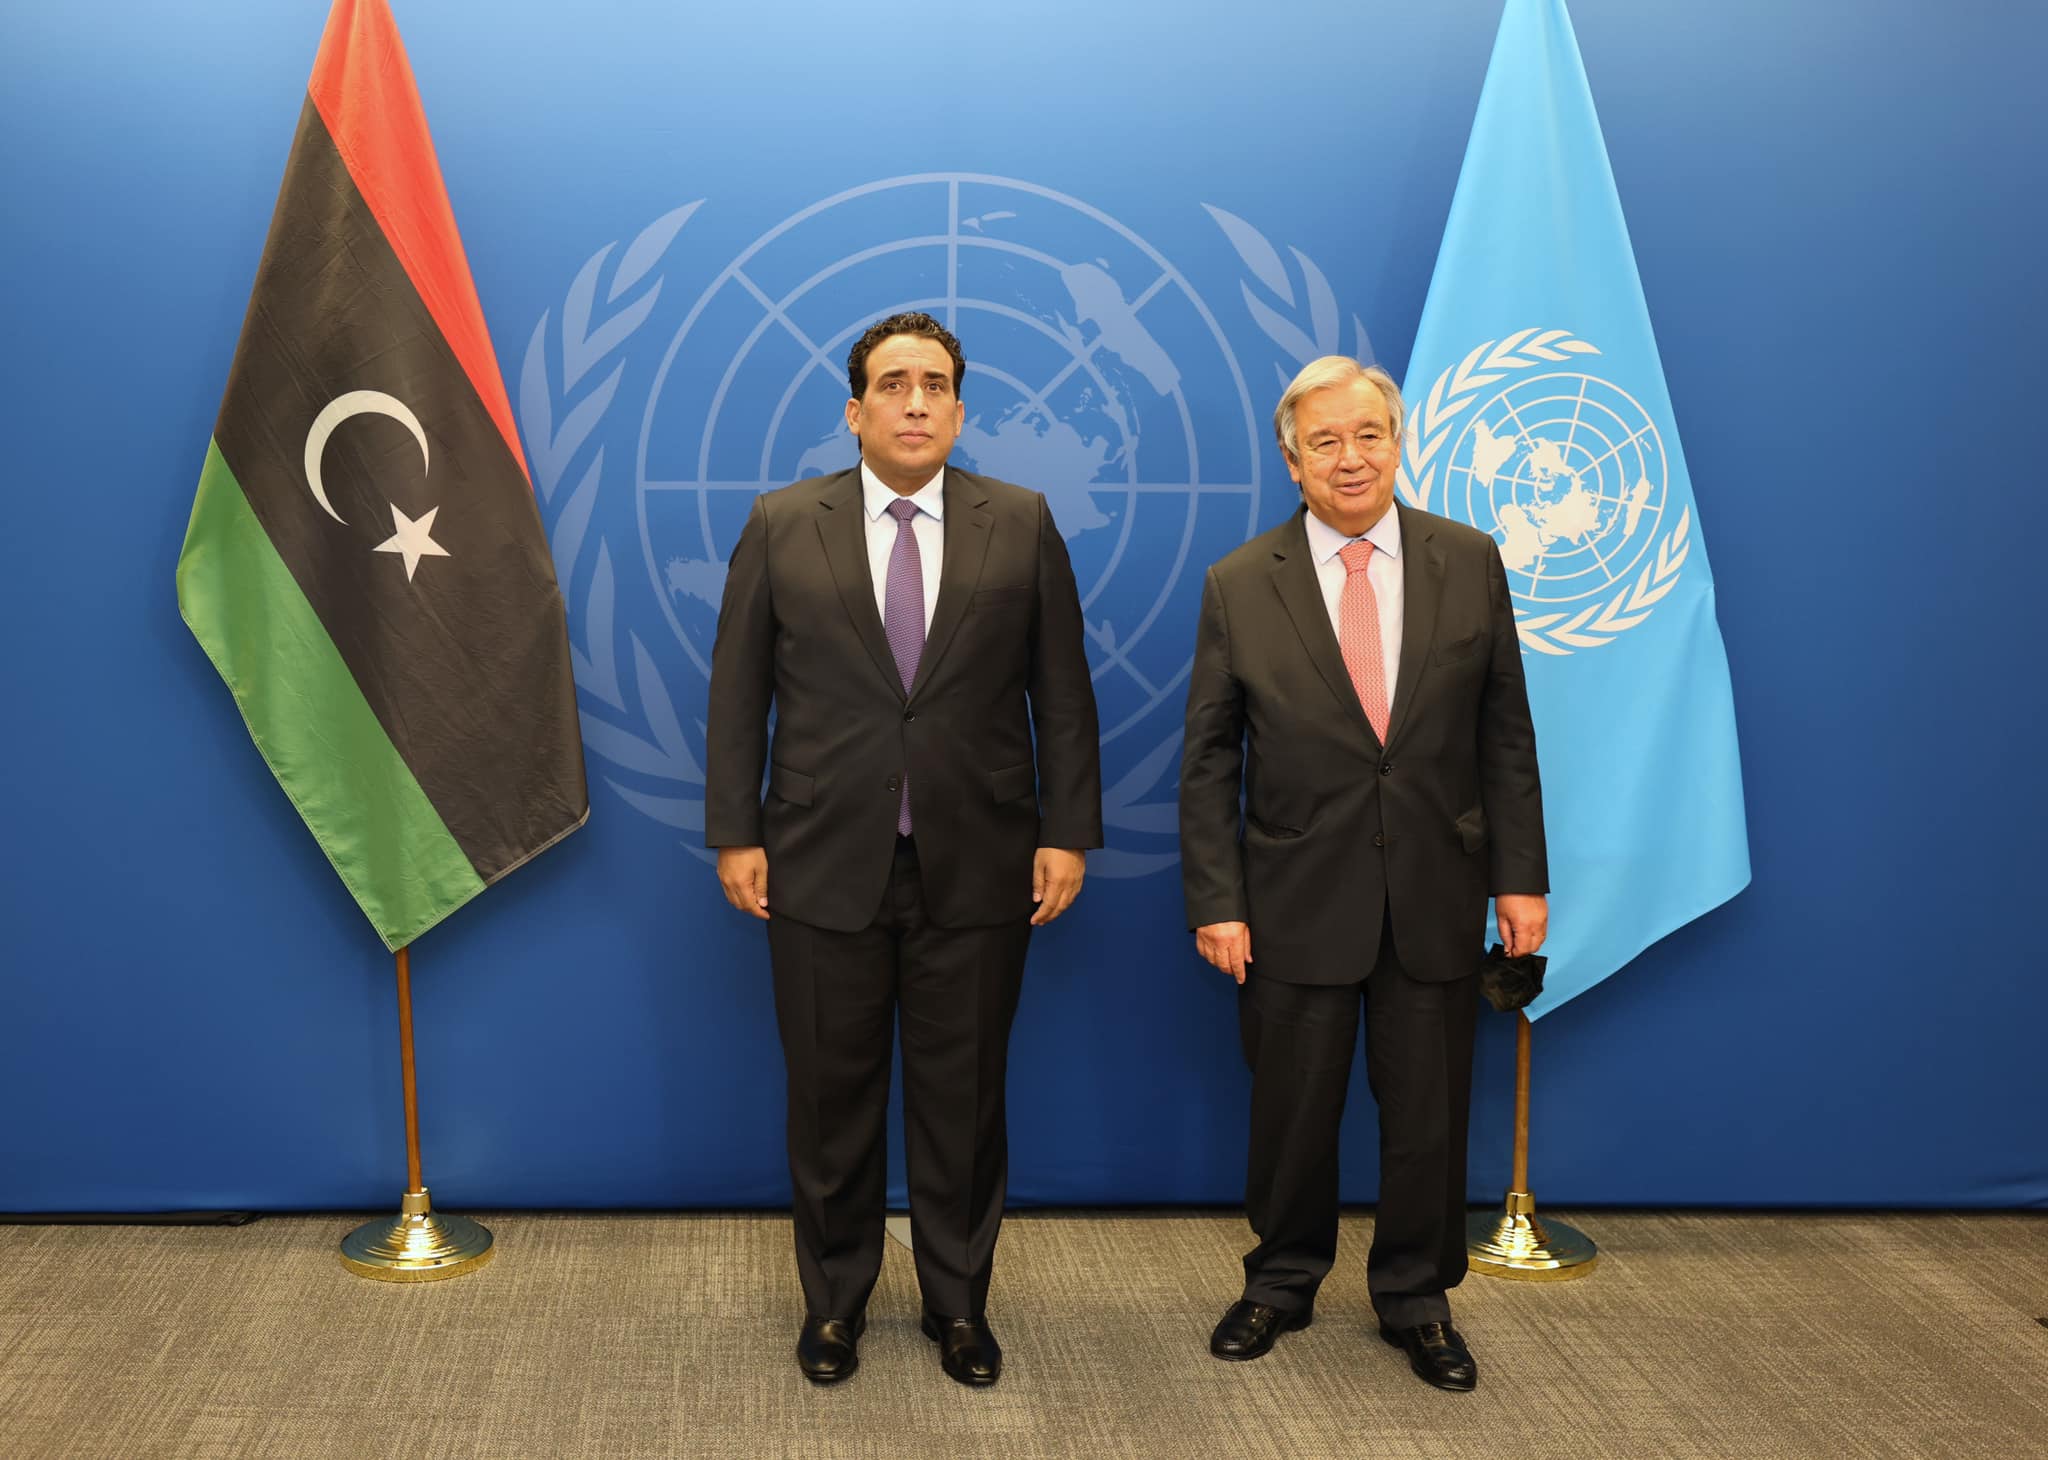 Antonio Guterres, confirme son grand intérêt pour le dossier libyen et son plein soutien aux efforts du Conseil présidentiel pour parvenir à la stabilité